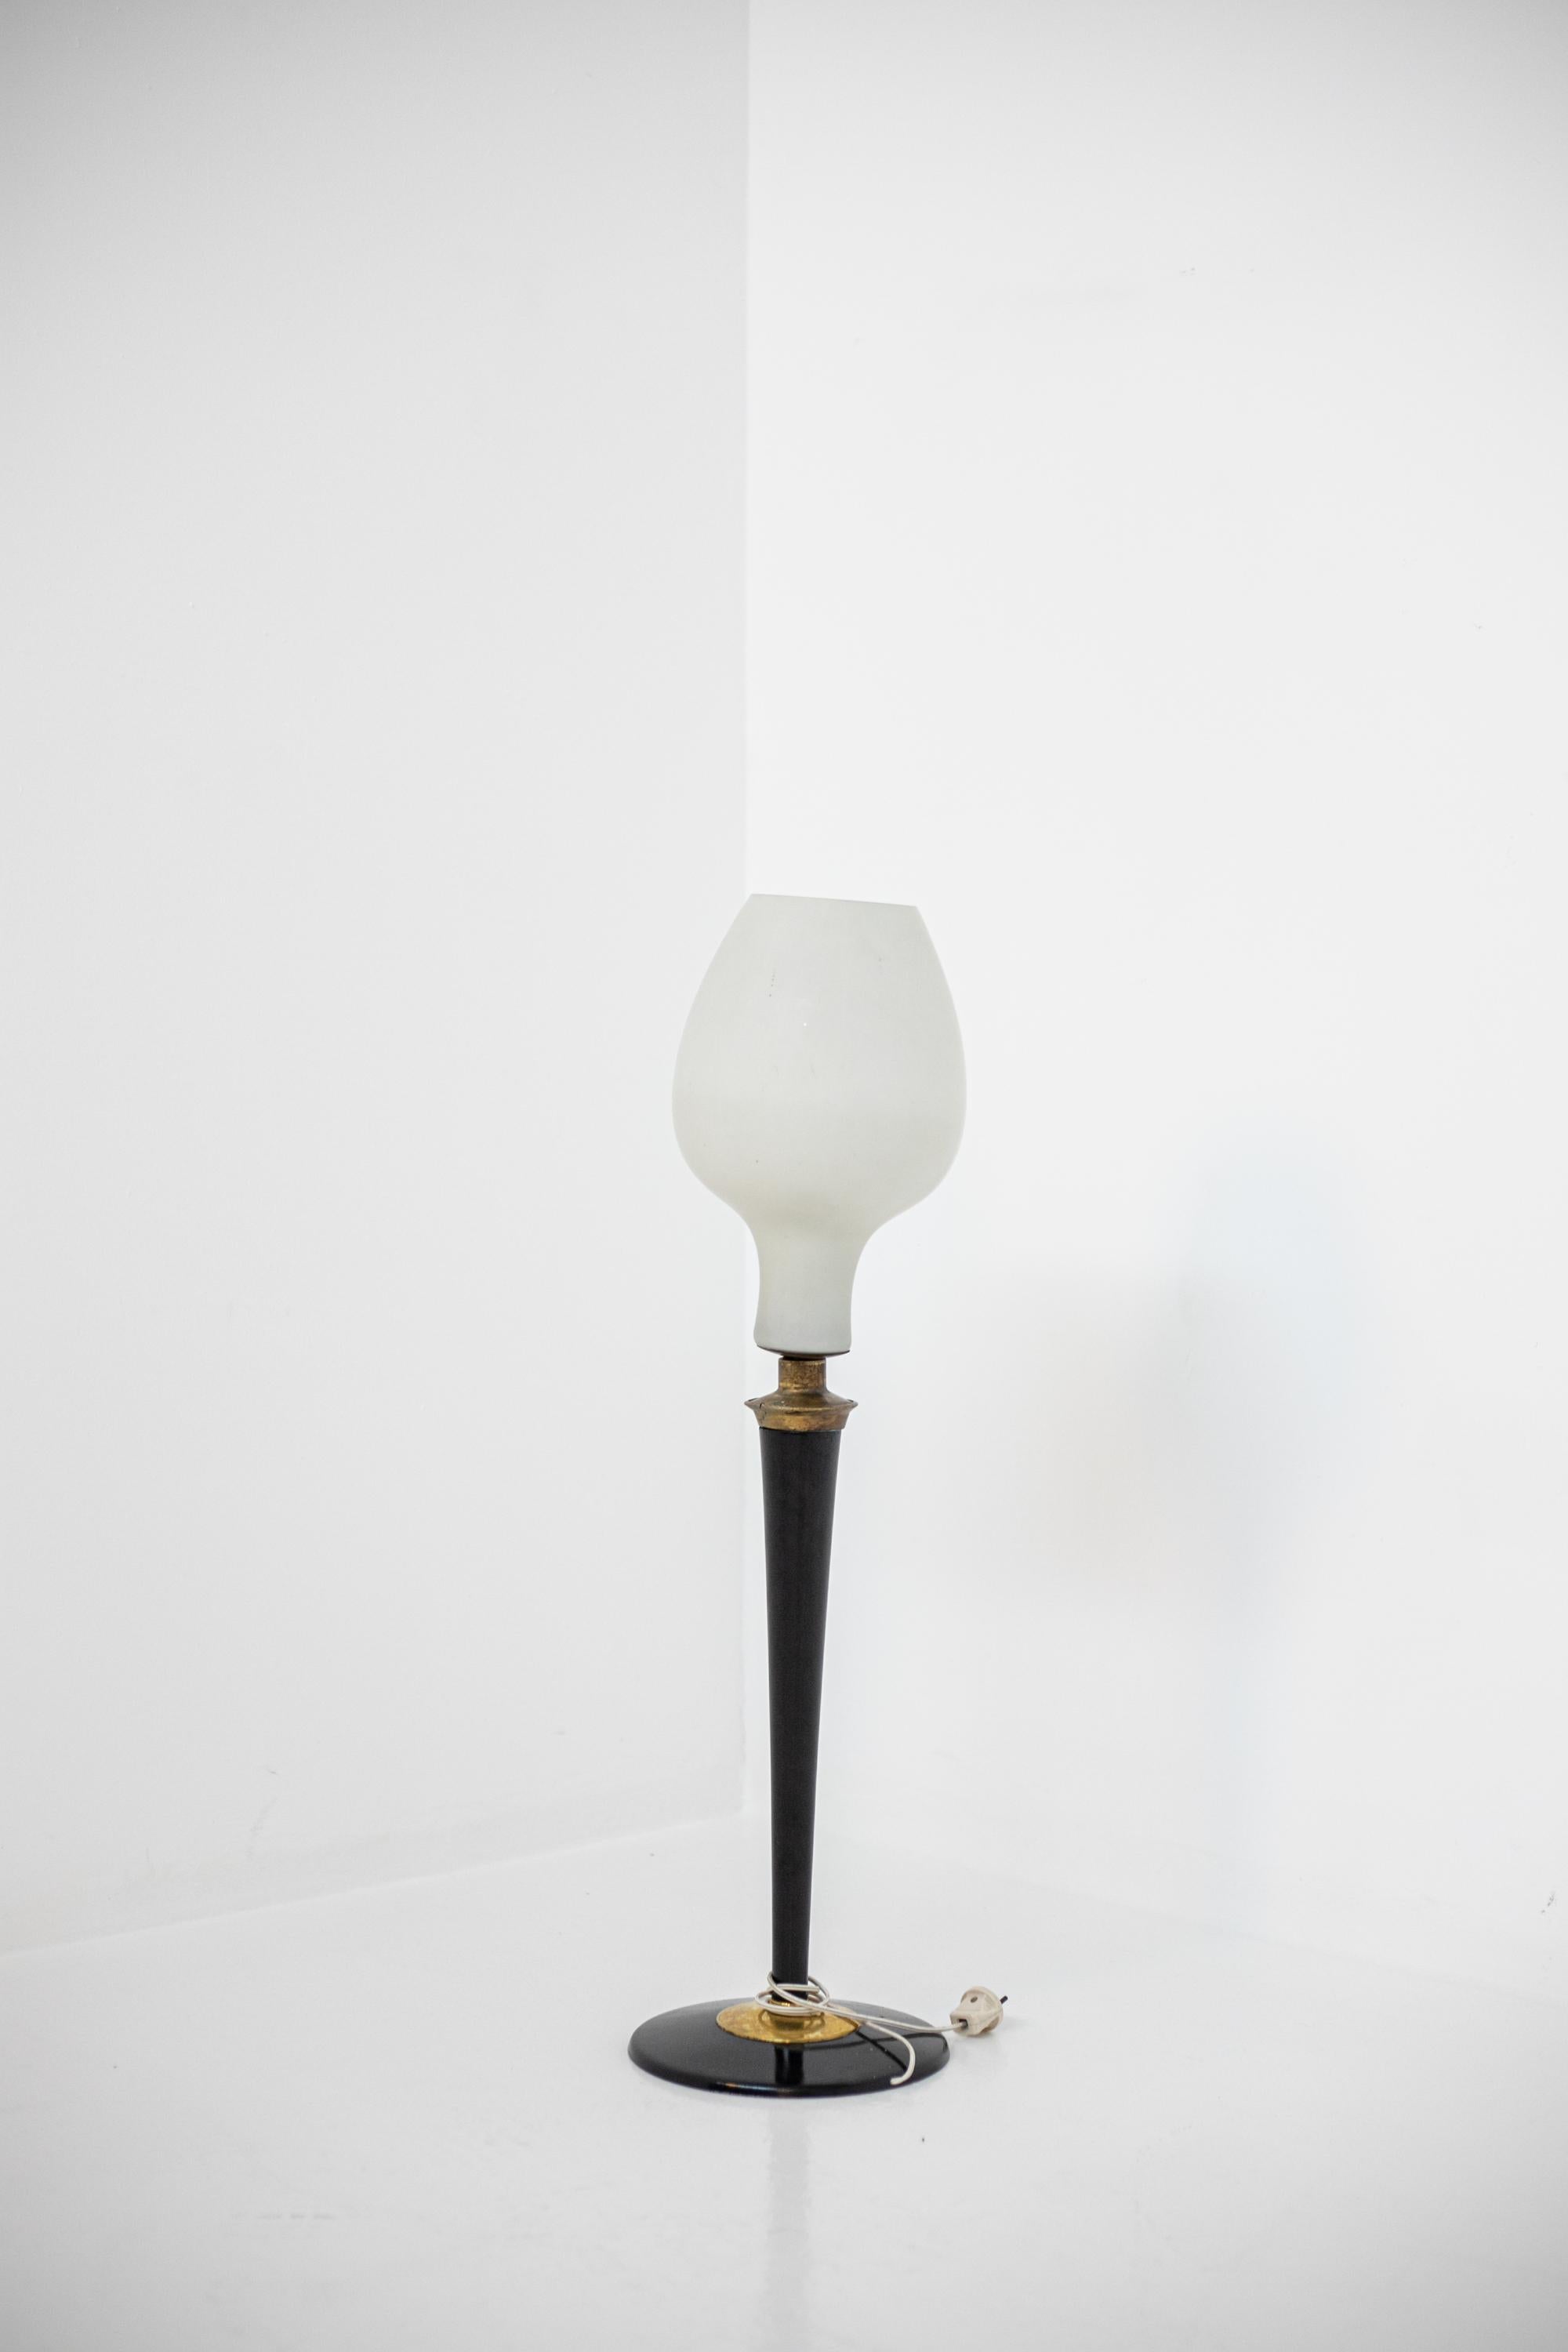 Grande lampe de table italienne des années 1950. La lampe a un couvercle en verre opale de forme ovale avec une seule lumière centrale. La lampe a une structure en bois peint avec des inserts en laiton. La base de forme circulaire confère stabilité